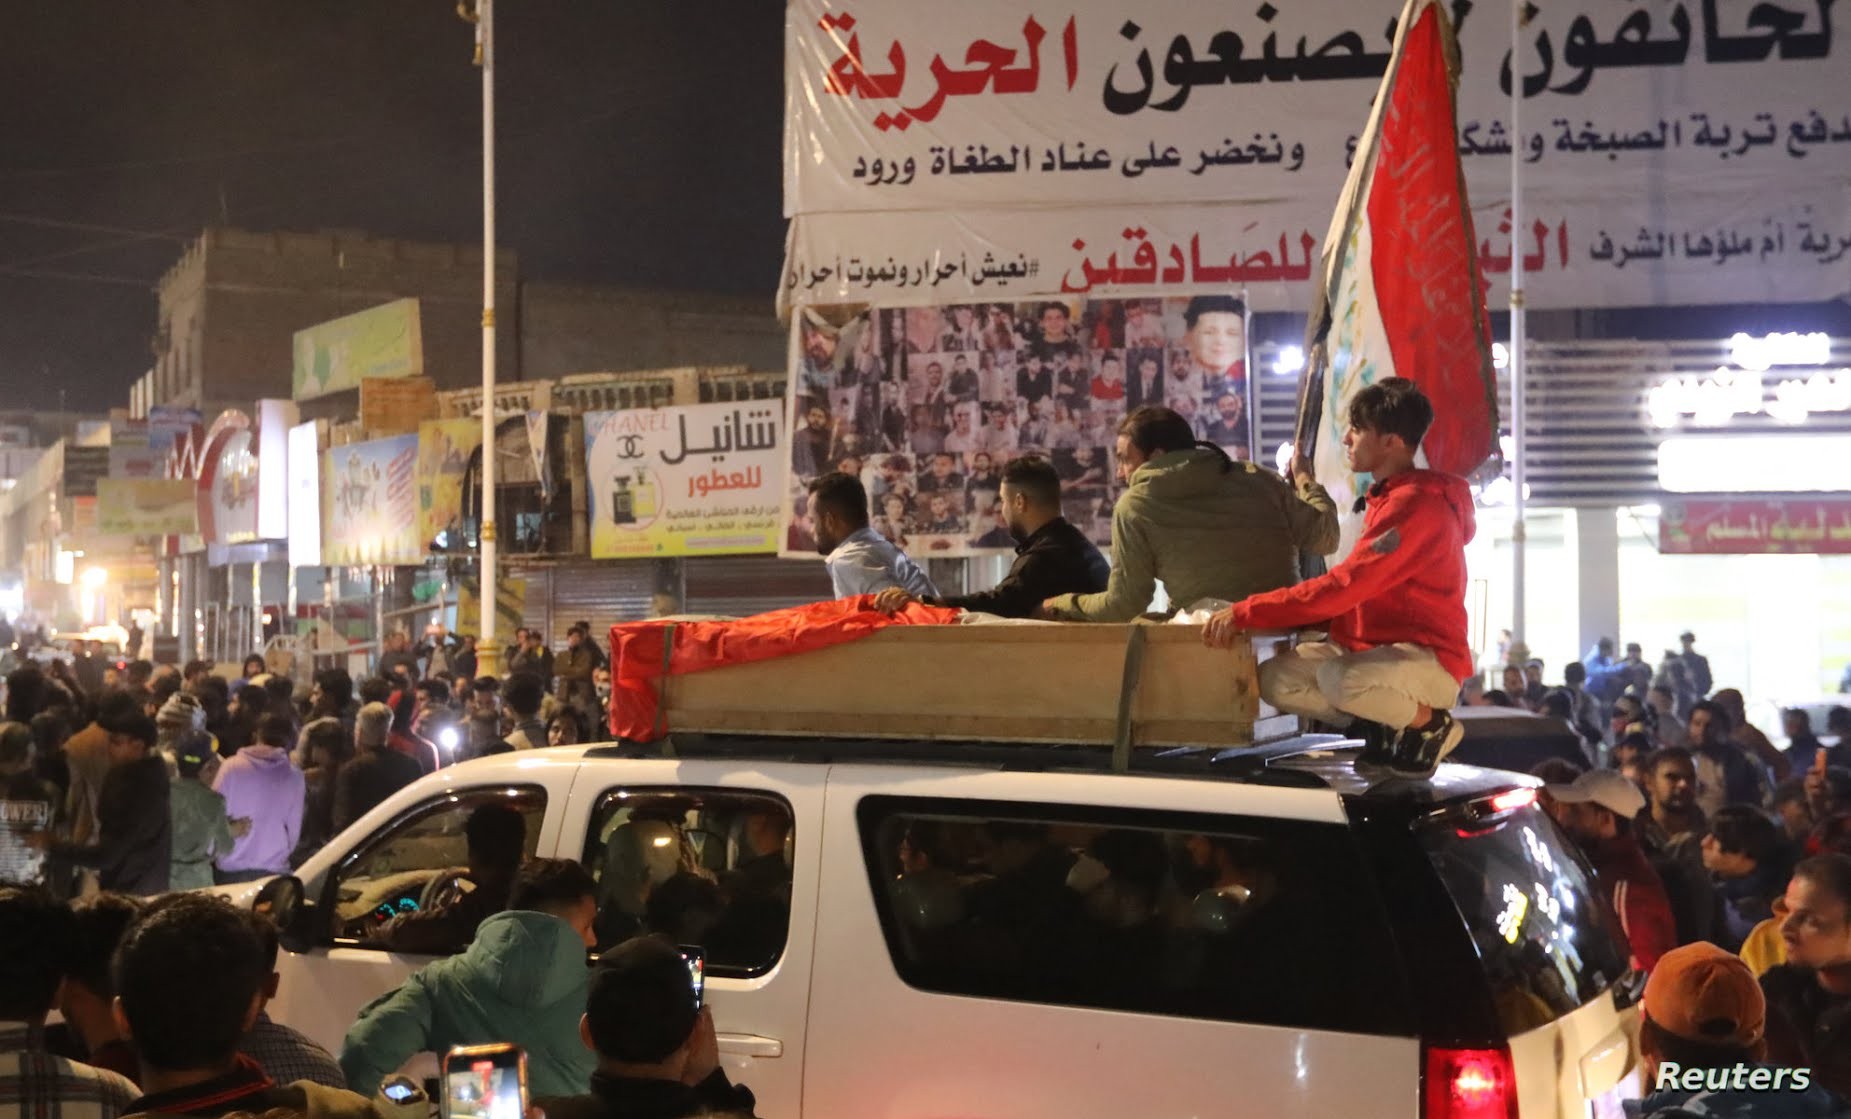 أثارت تظاهرات الناصرية مخاوف من عودة الاحتجاجات الشعبية في أنحاء العراق وتعطيل الحياة كما في عامي 2019 و2020